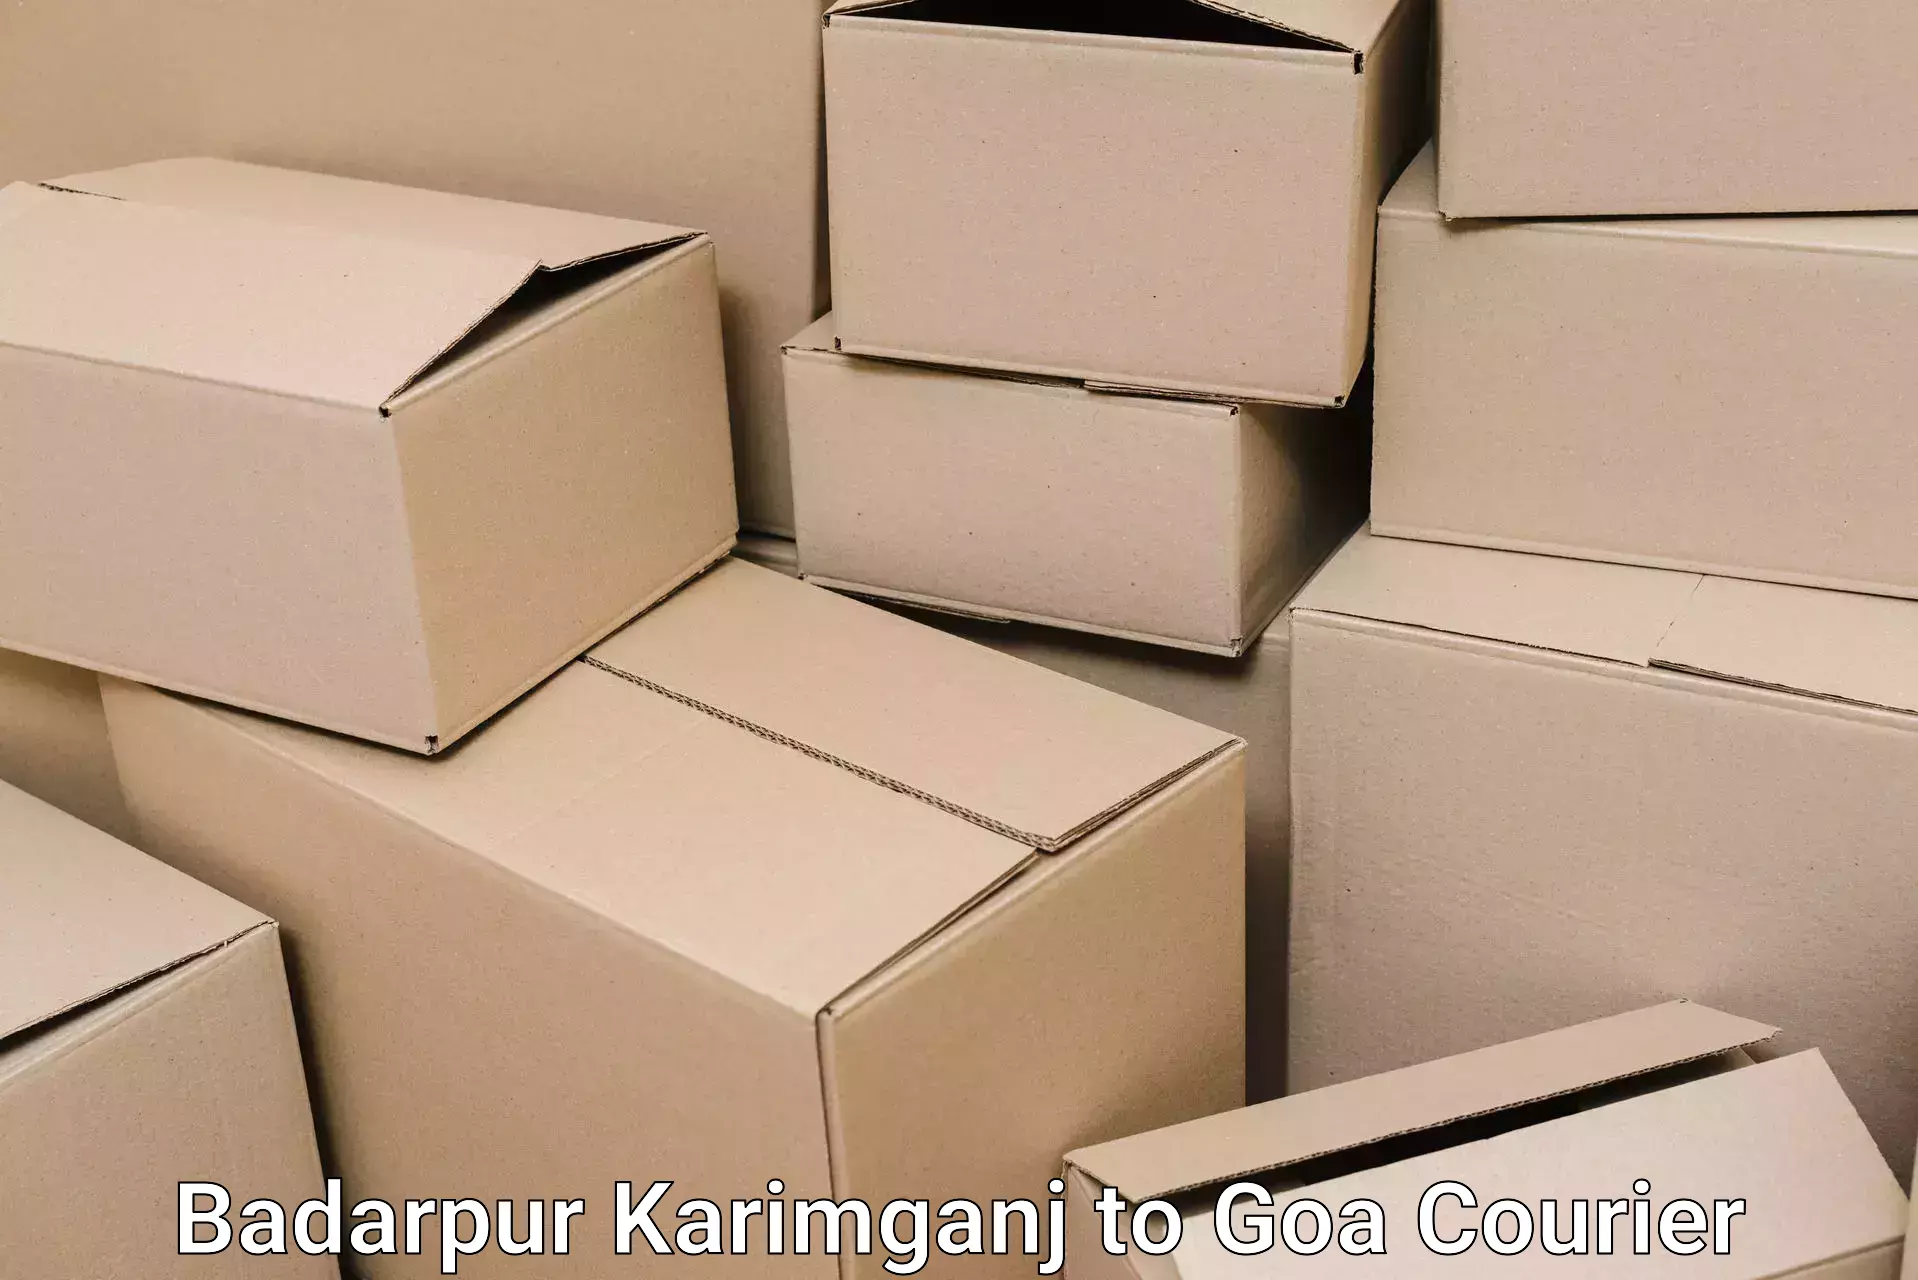 Specialized moving company Badarpur Karimganj to Bardez